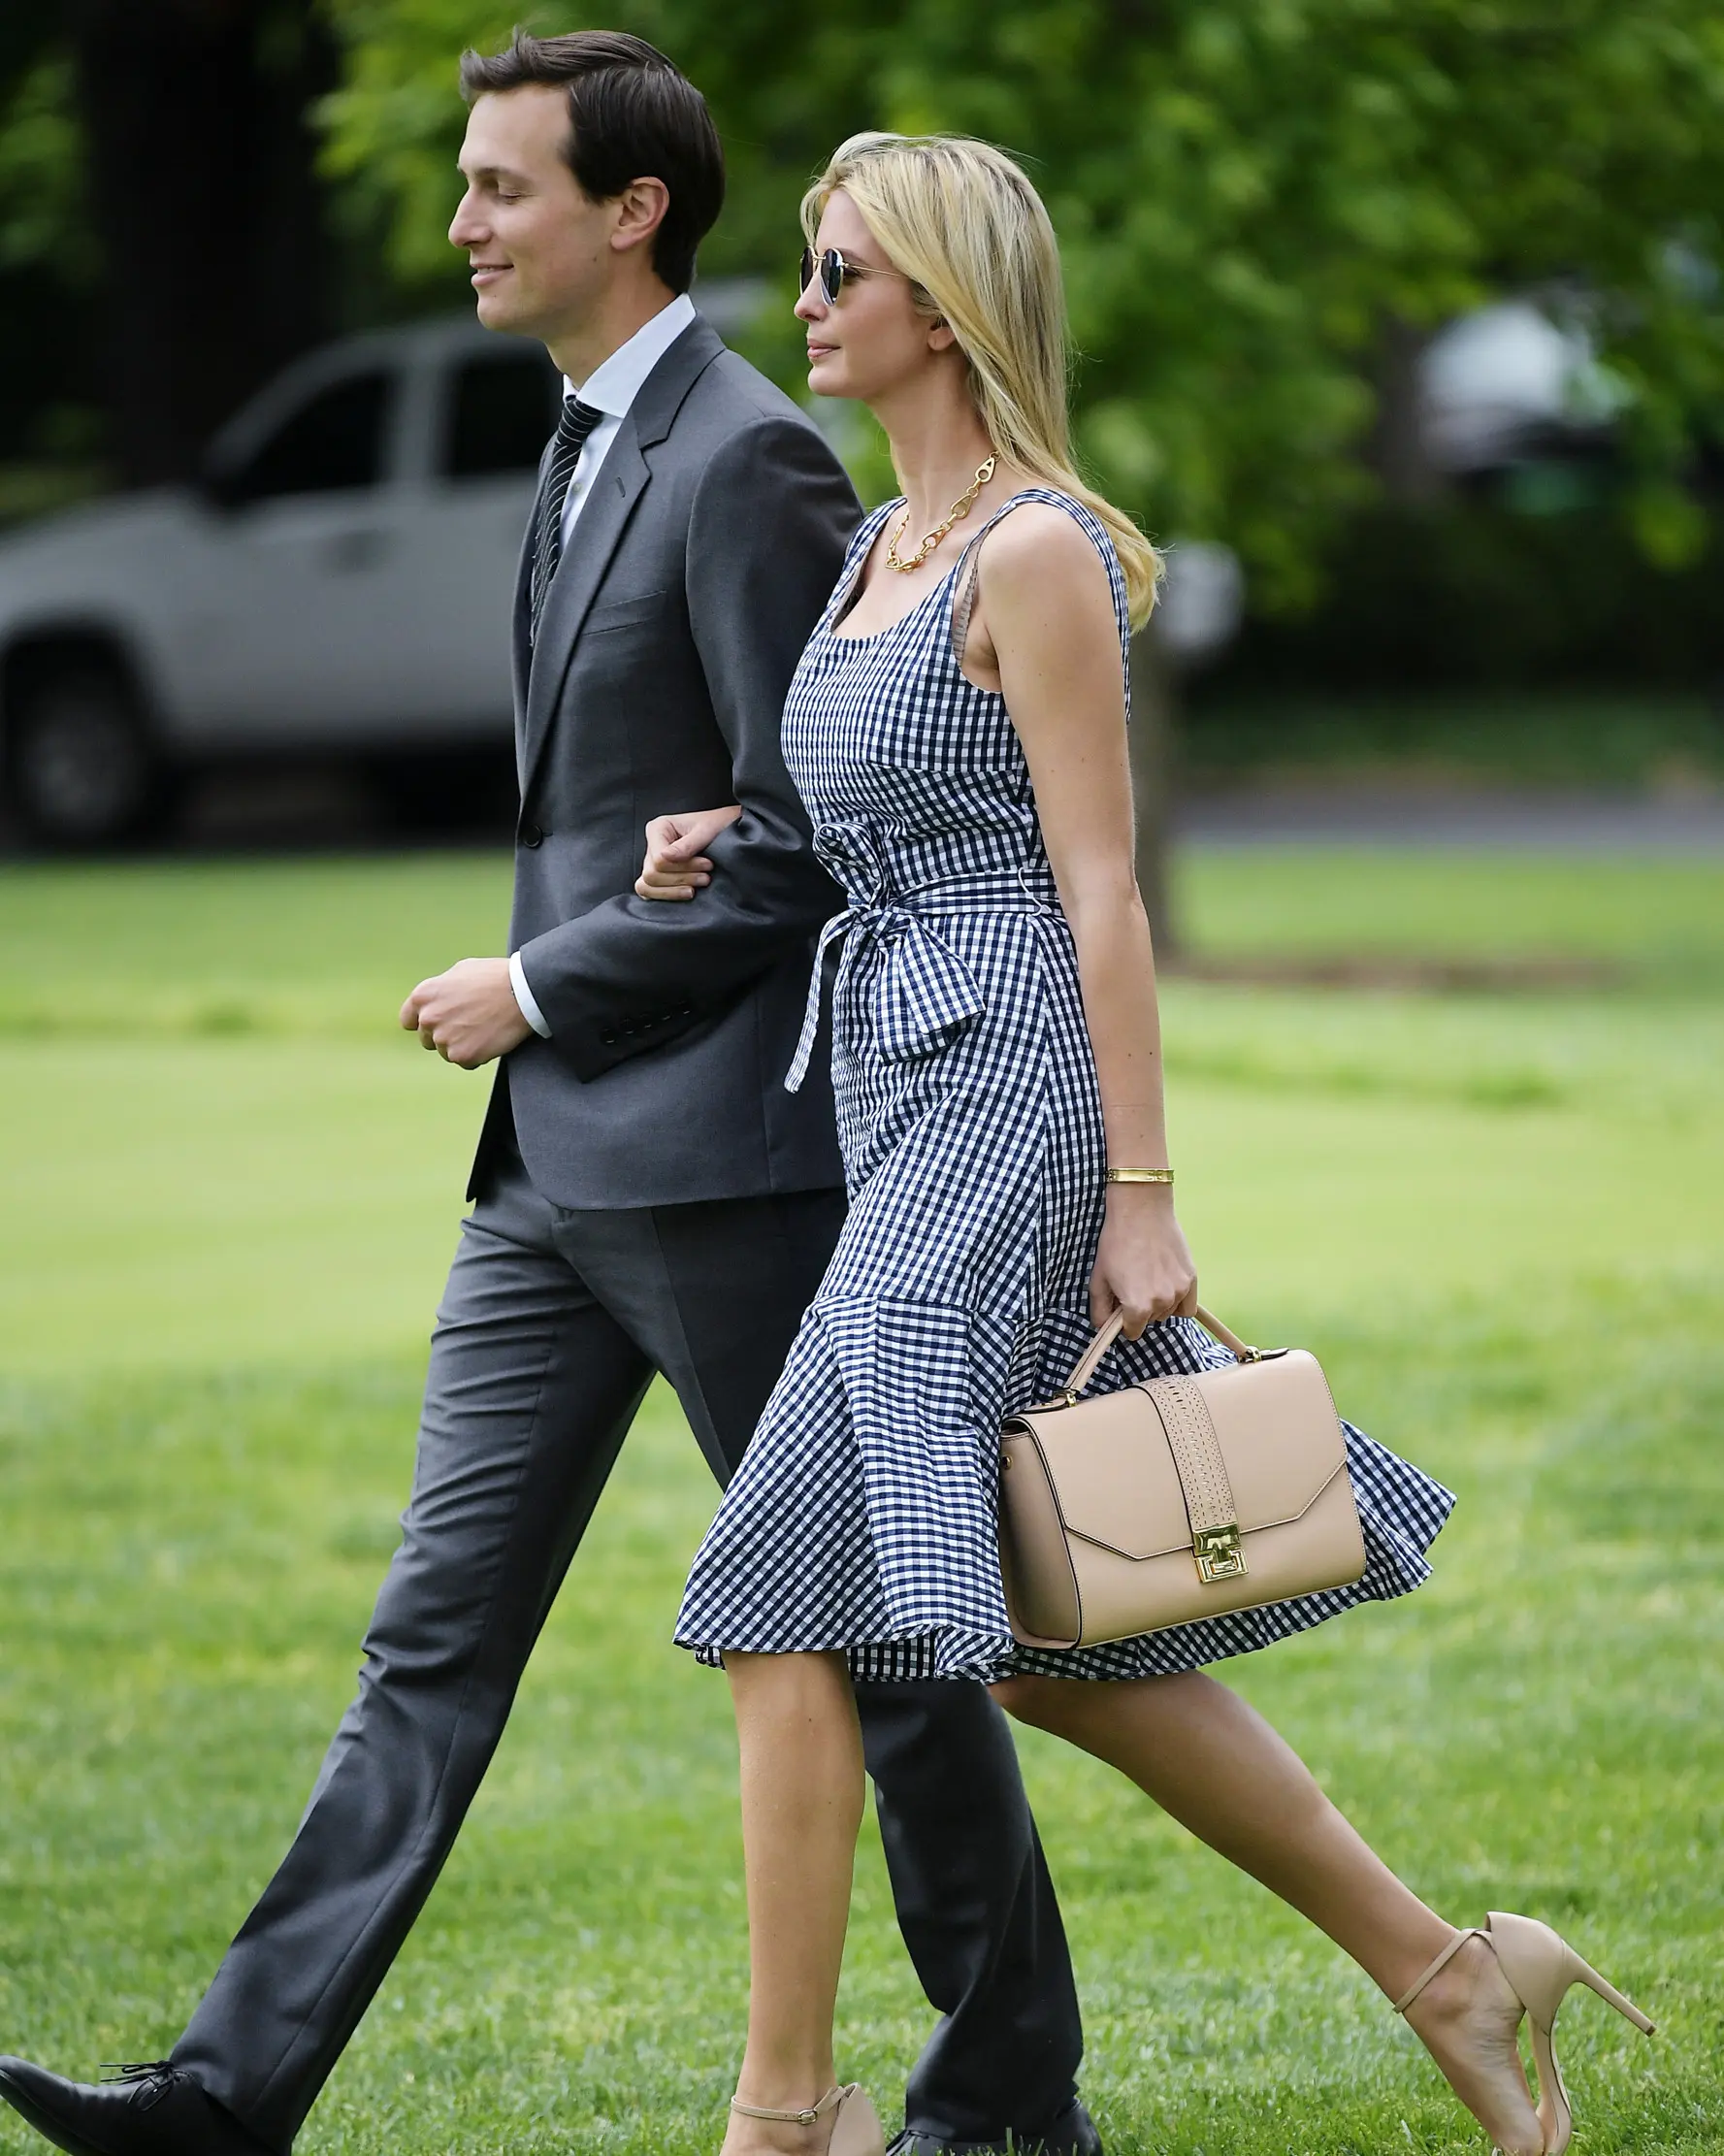 Ivanka Trump bersama sang suami berjalan menuju Marine One di Gedung Putih di Washington, DC (4/5). Mengenakan Dress kotak-kotak dengan kaca mata hitam Ivanka tampil mempesona. (AFP Photo/Mandel Ngan)